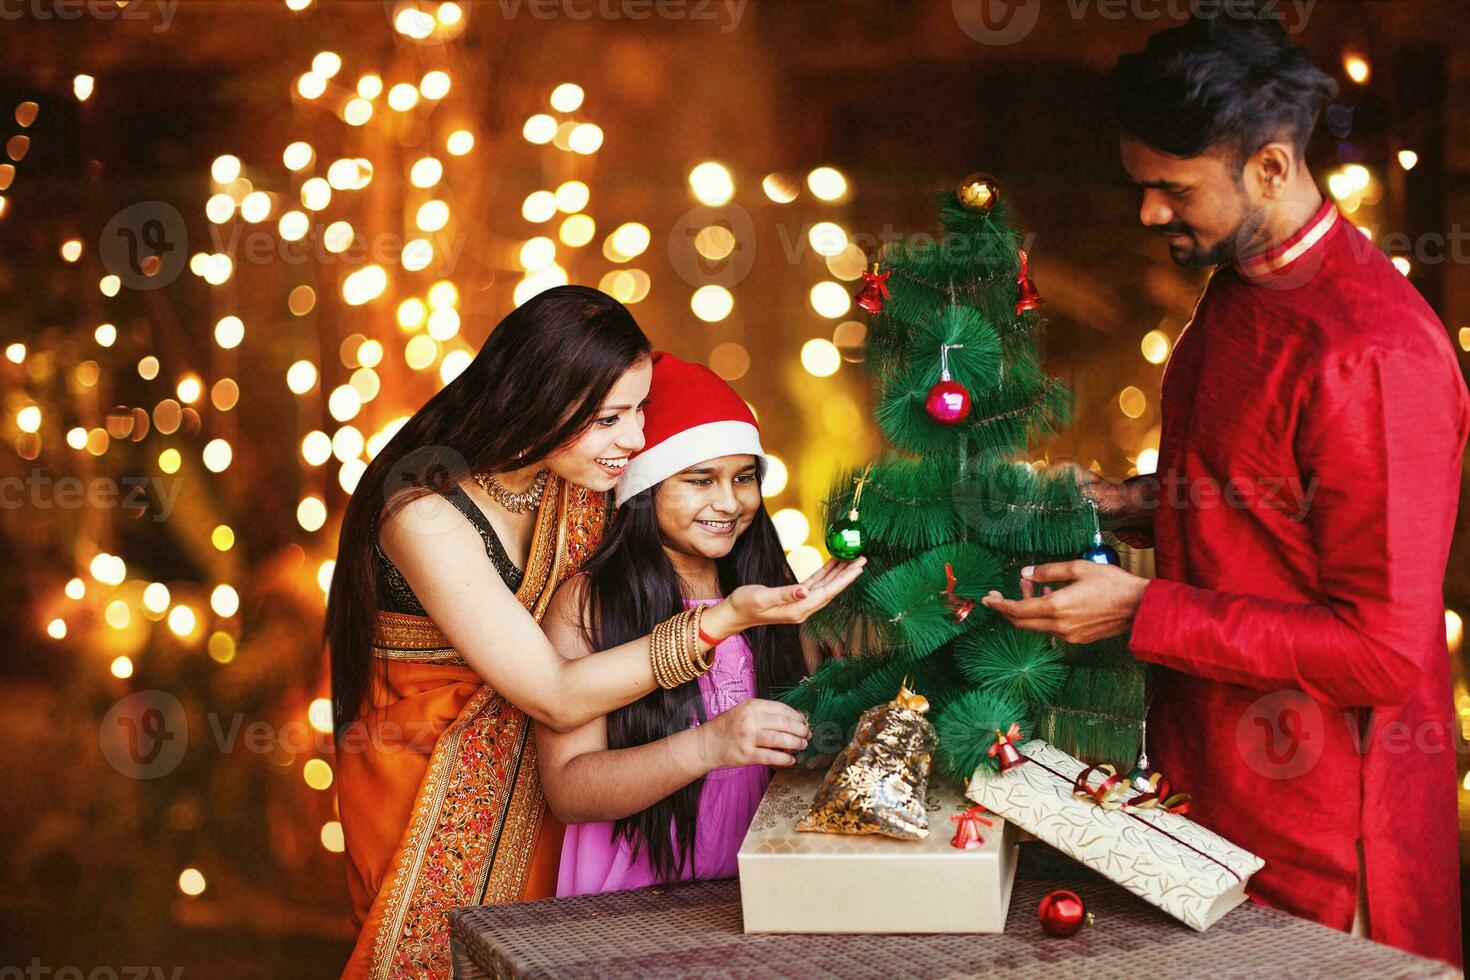 bellissimo indiano famiglia nel etnico Abiti decorazione Natale albero per il nuovo anno celebrazione a notte foto